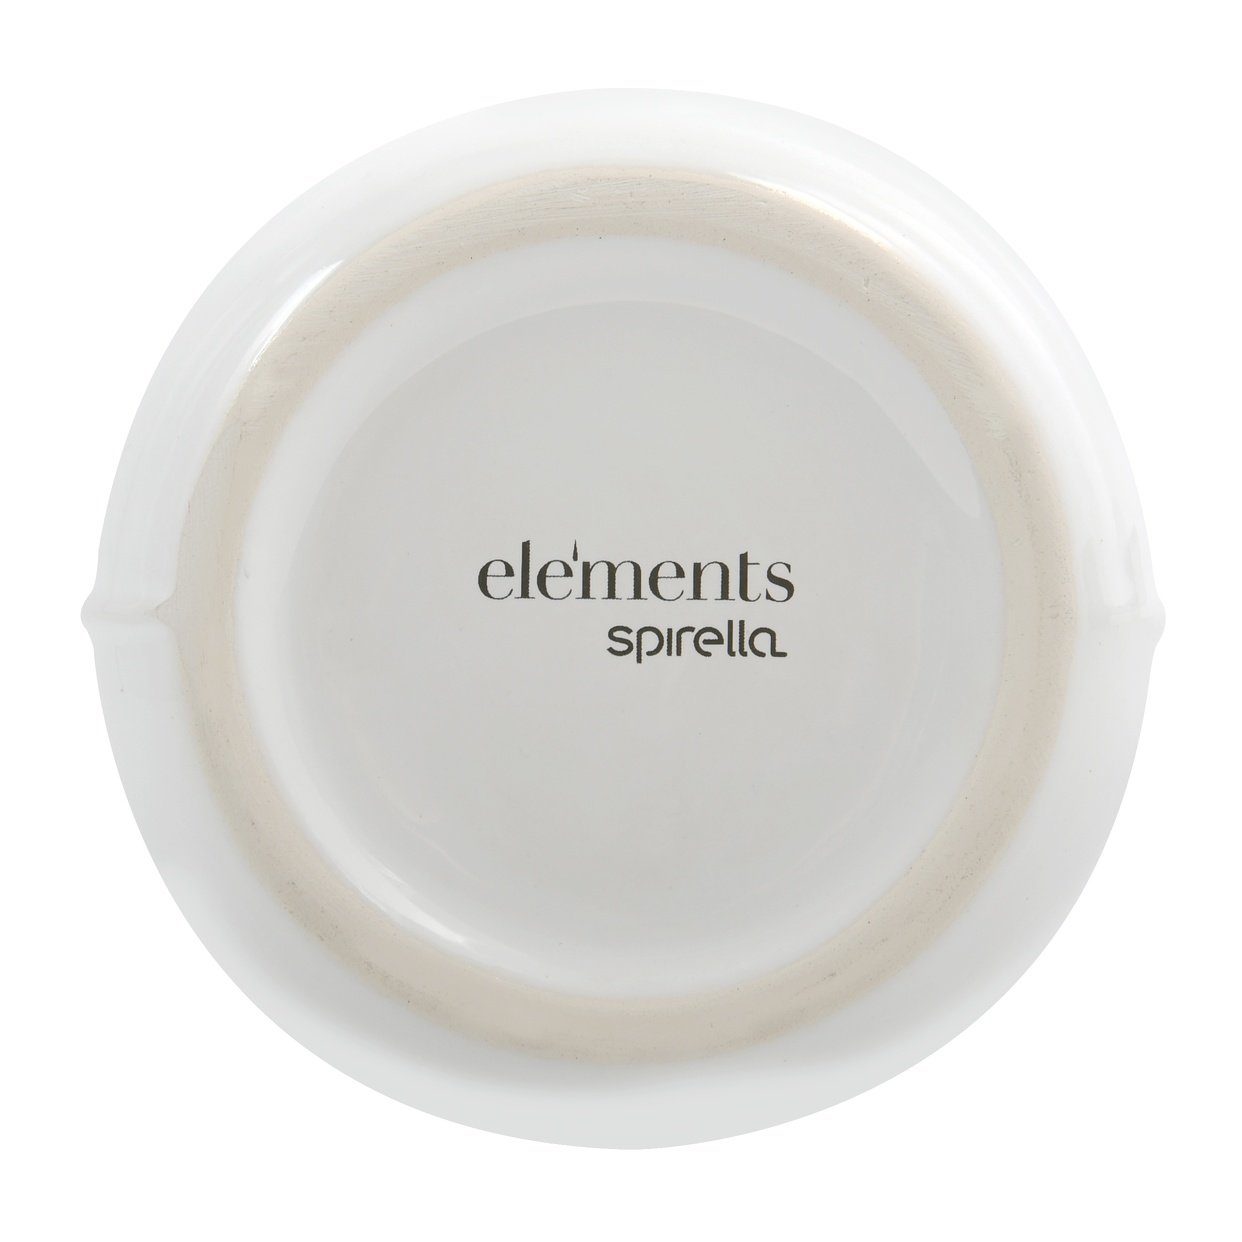 Edelstahl, Premium Portugal, Made Elements, SENSE, - Hochwertige individuelle in weiß Keramik spirella® WC-Garnitur Ästhetik, WC-Garnitur spirella Elements